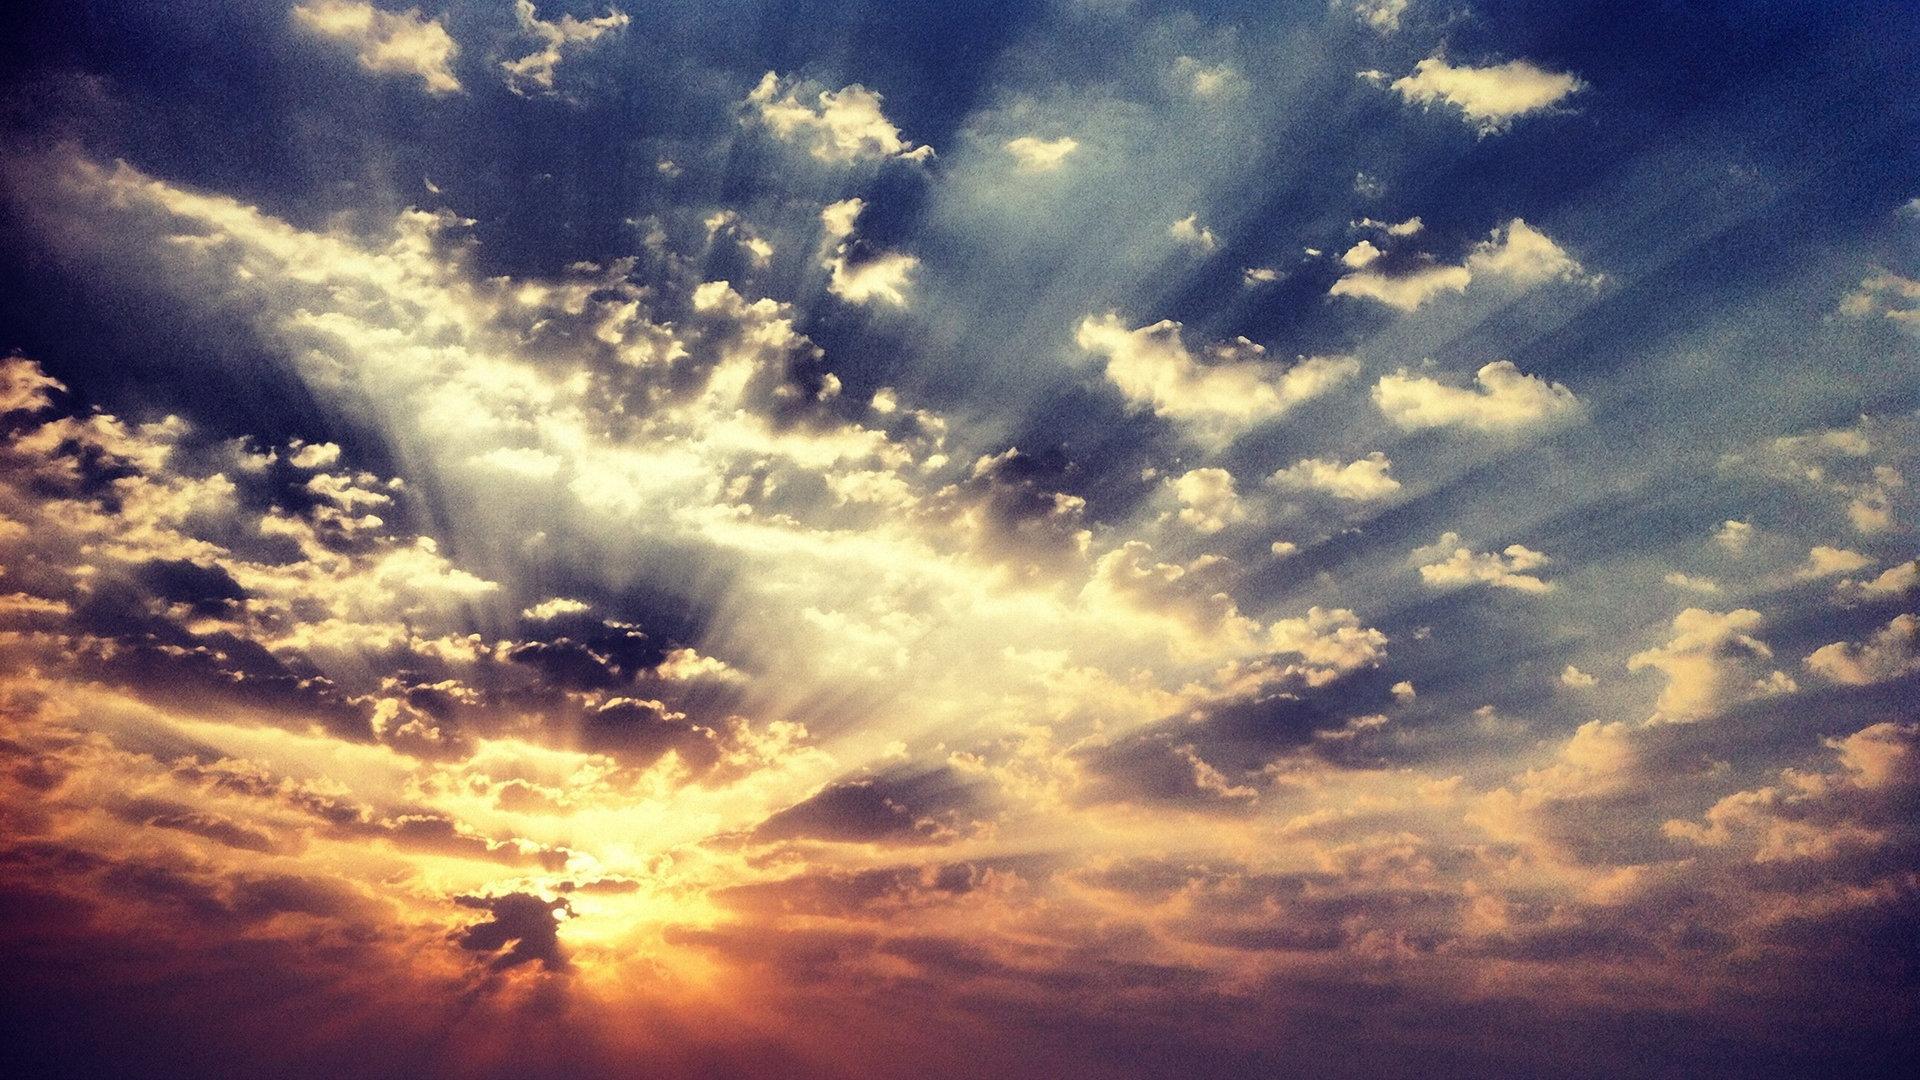 Hình nền động bầu trời với những hình ảnh lung linh của đám mây và ánh nắng chớm trên đất trời sẽ giúp cho nhữnggiây phút trên máy tính của bạn trở nên tuyệt vời hơn và tạo tạo ấn tượng đó để khoe với bạn bè của bạn.